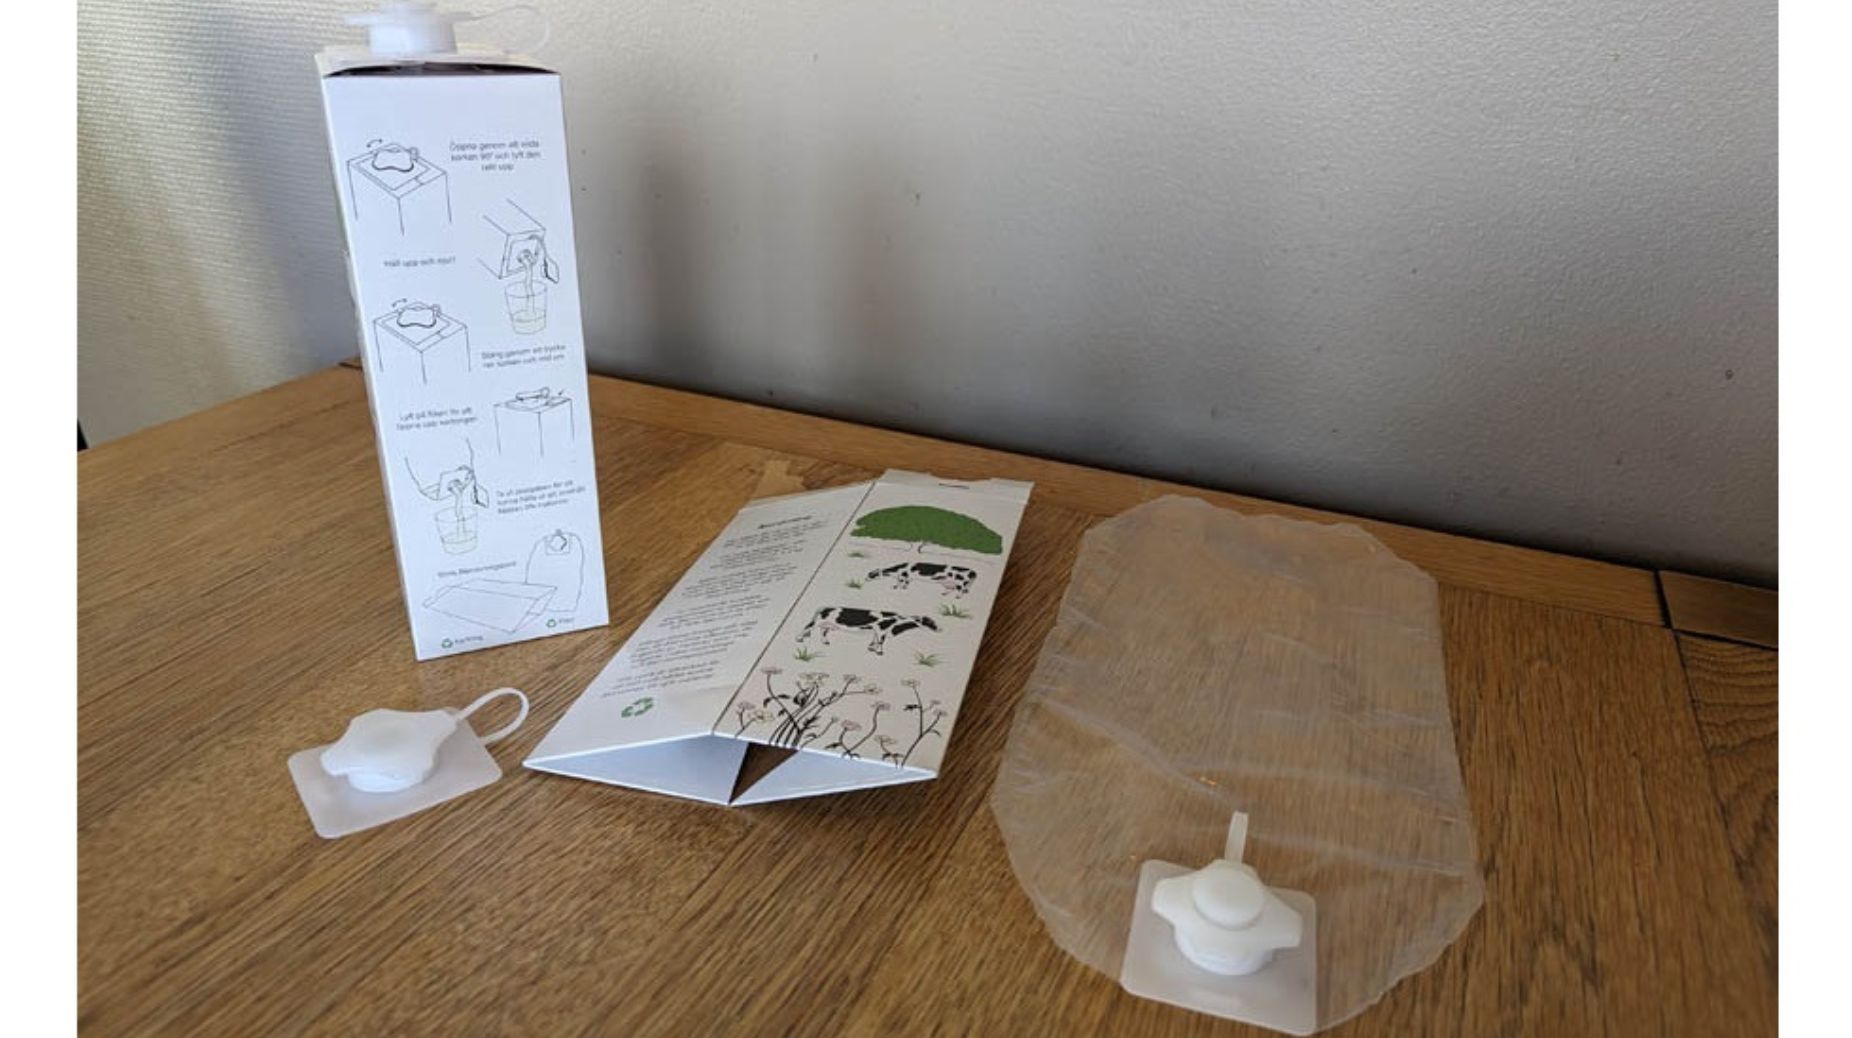 RIN-pack heeft een zuivelverpakking ontwikkeld waarvan het papier en plastic volledig en eenvoudig zijn te scheiden.